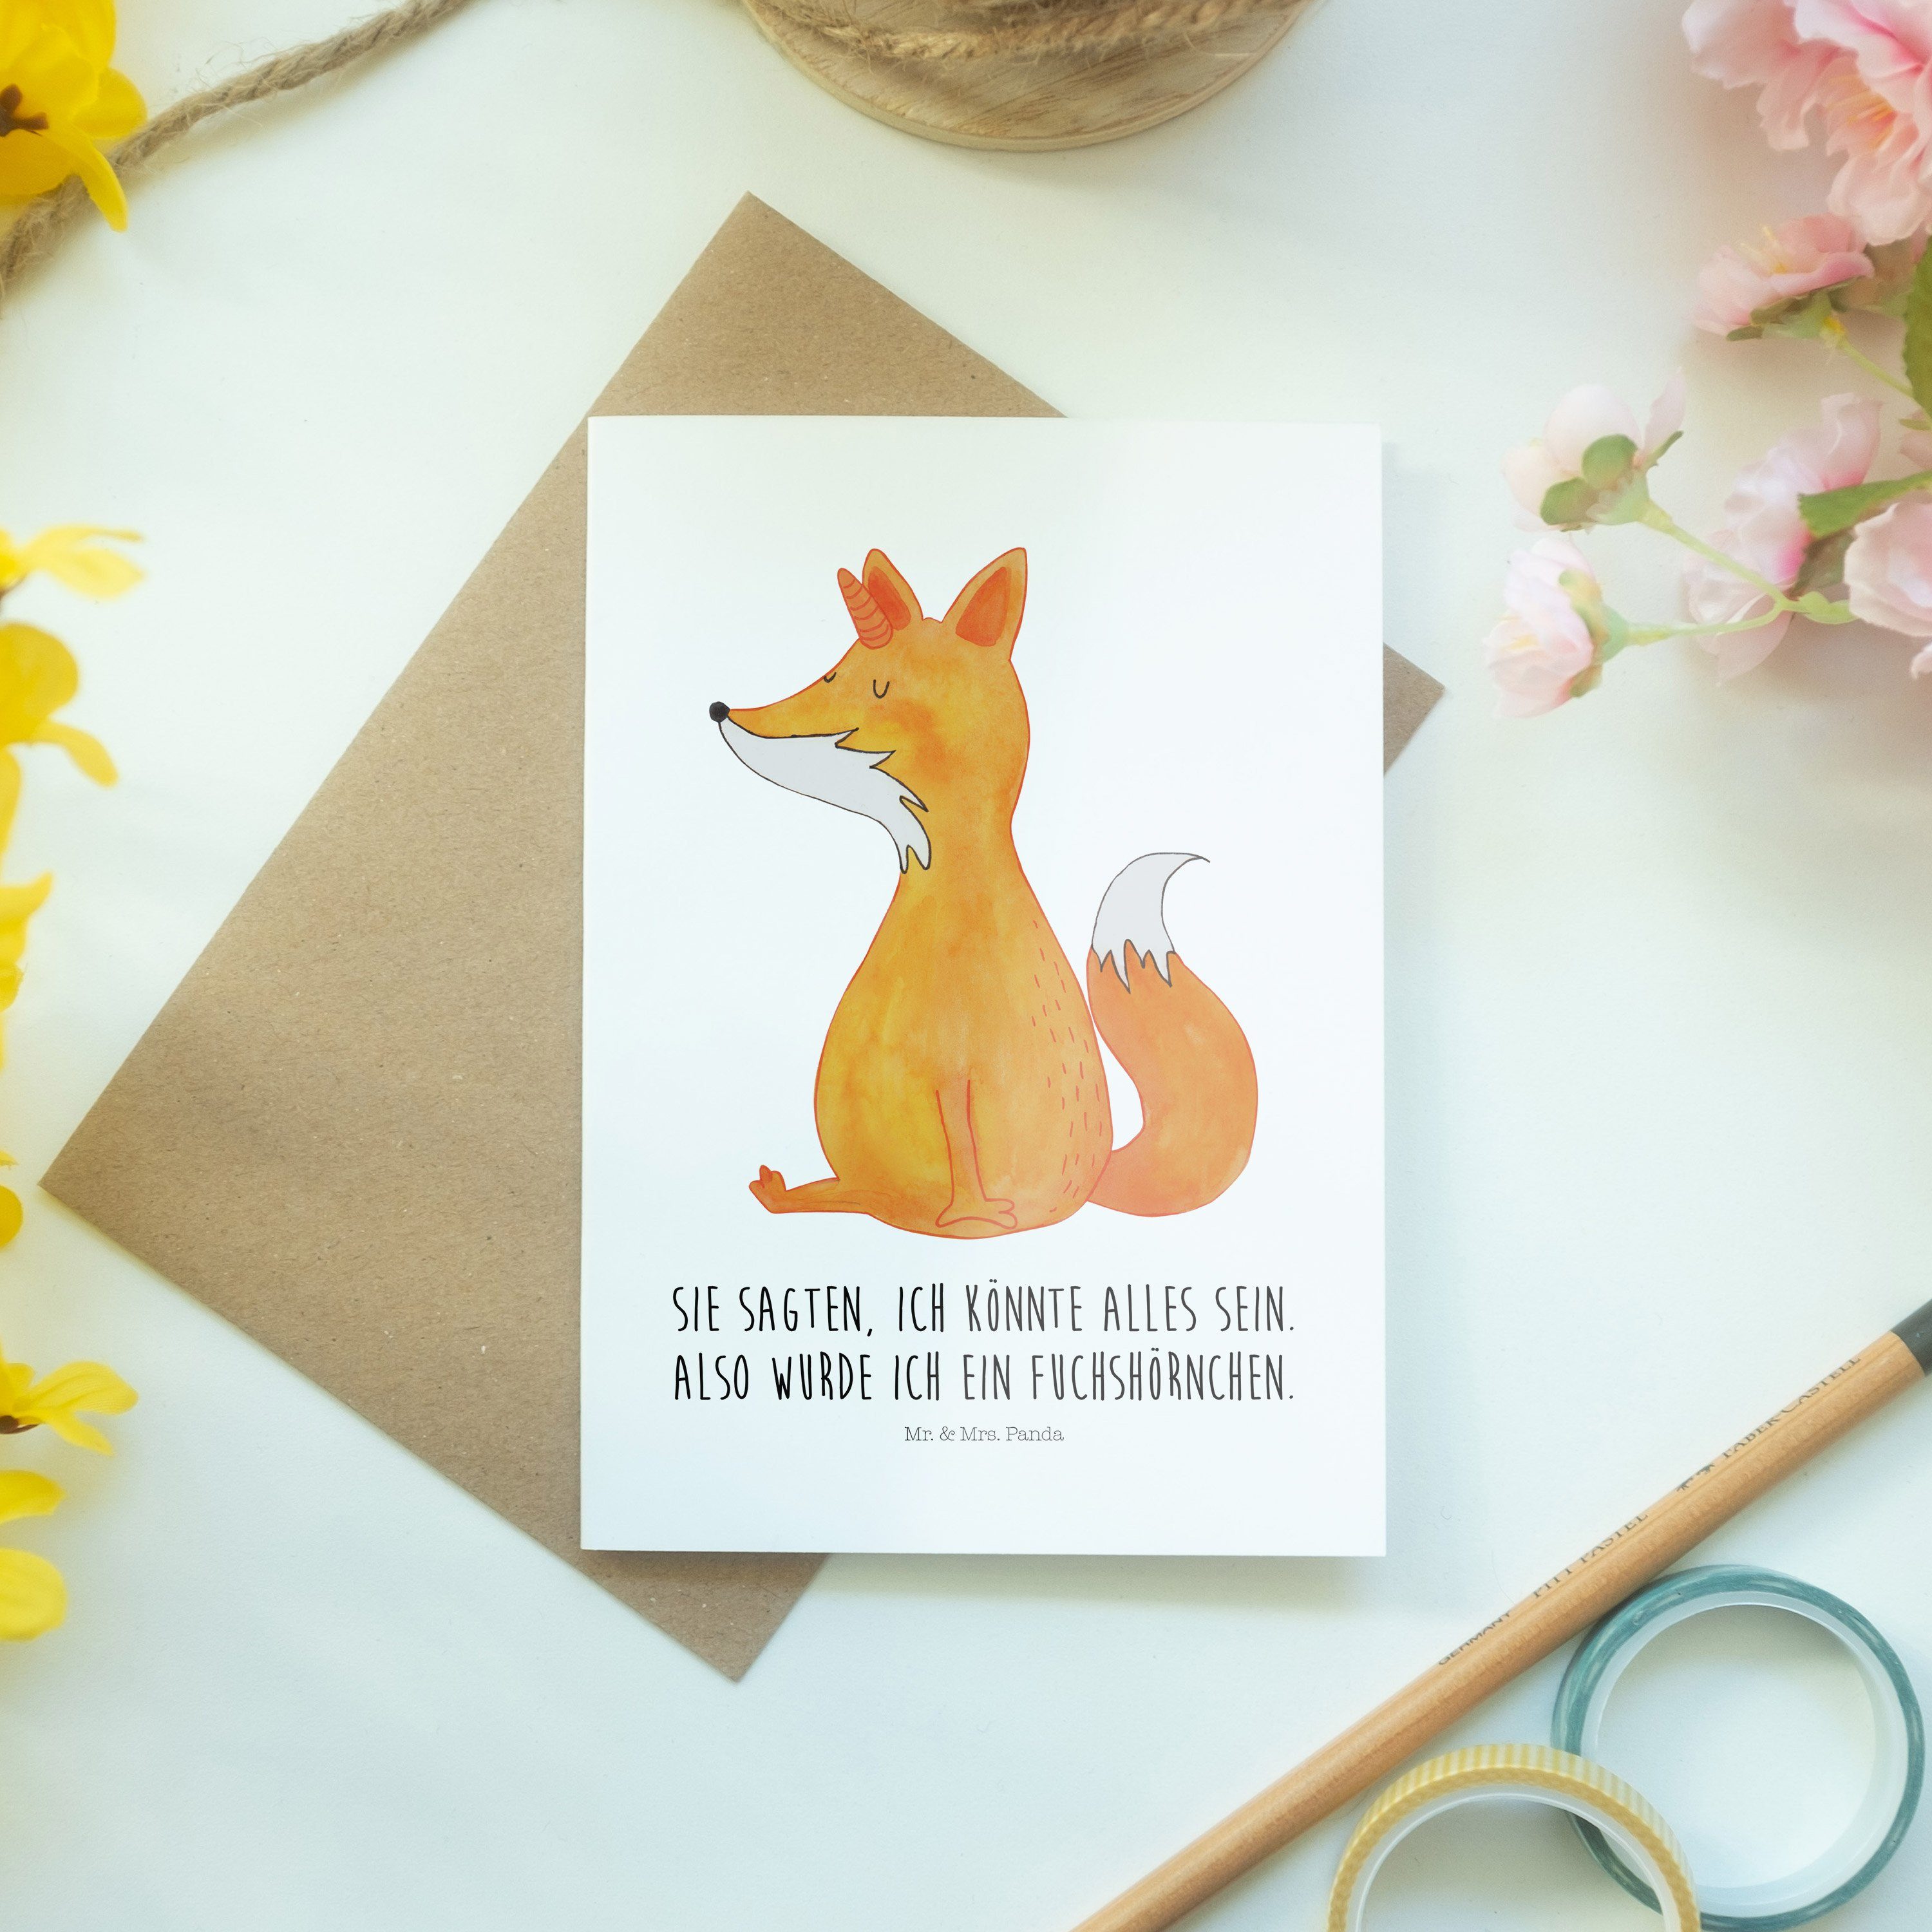 Geschenk, Mr. Klappkarte, Fuchshörnchen Grußkarte - Mrs. Weiß - Panda Hochzeitskarte & Unicorns,